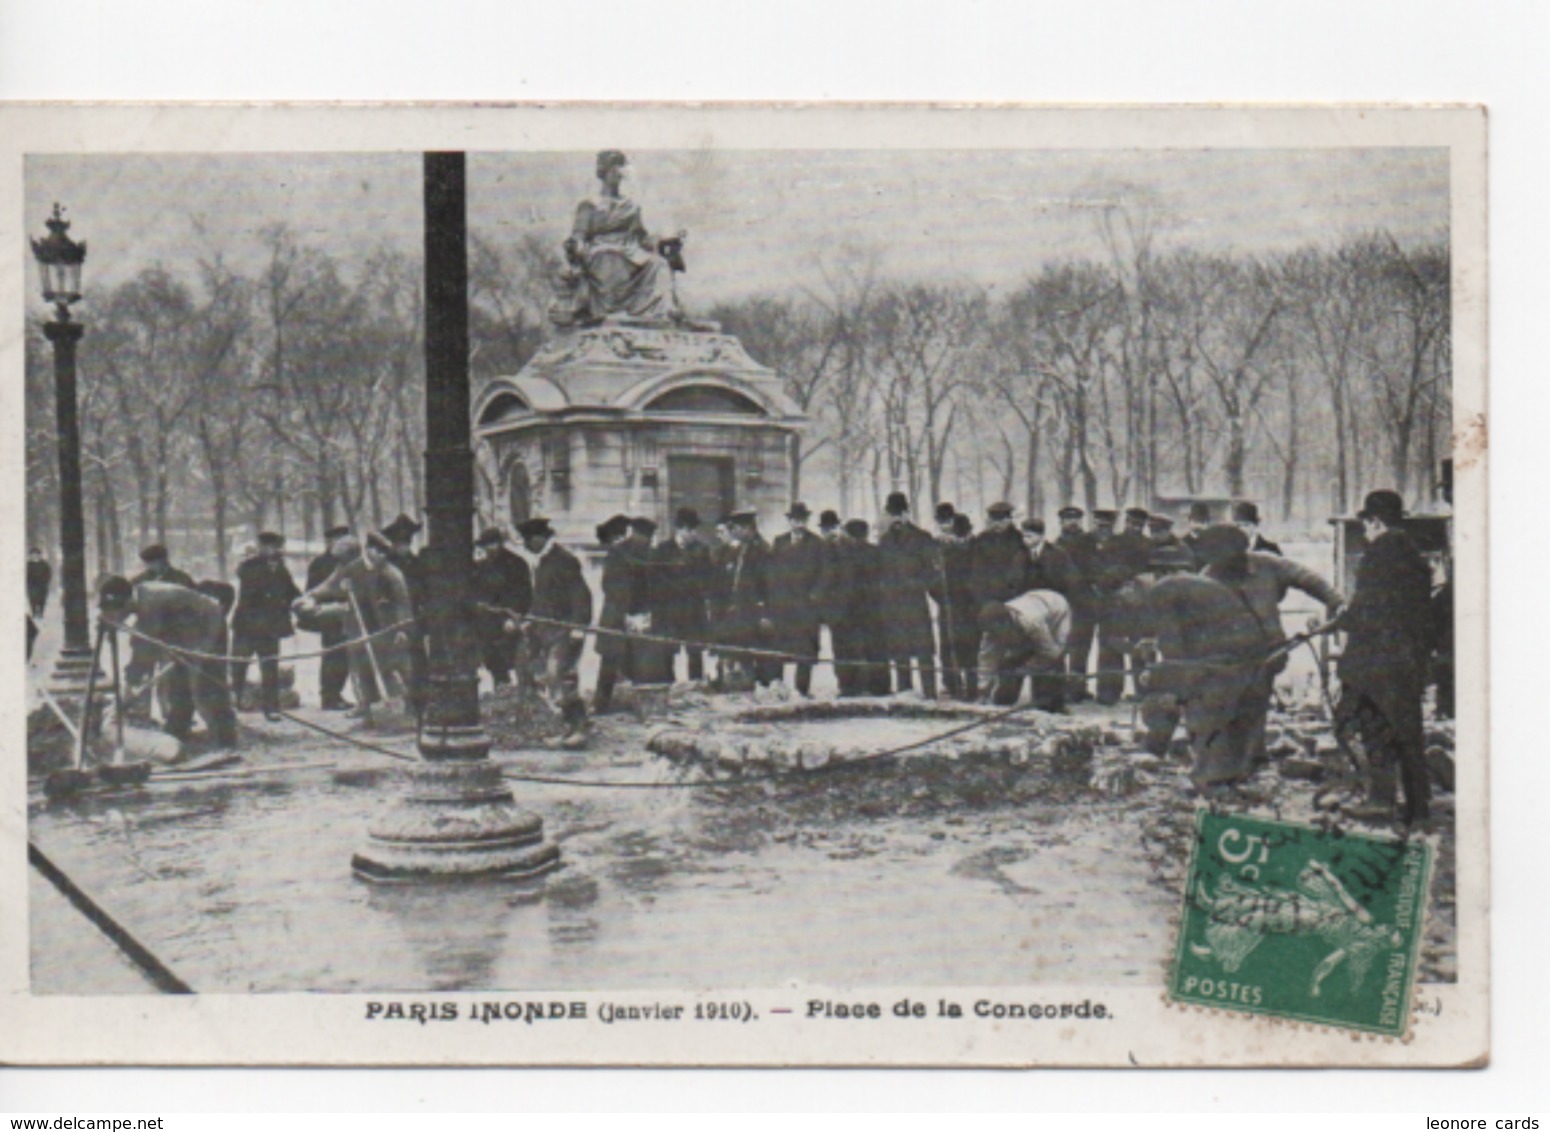 Cpa.Evenement.Inondations.Paris Inondé.1910.Place De La Concorde.animé Personnages. - Inondations